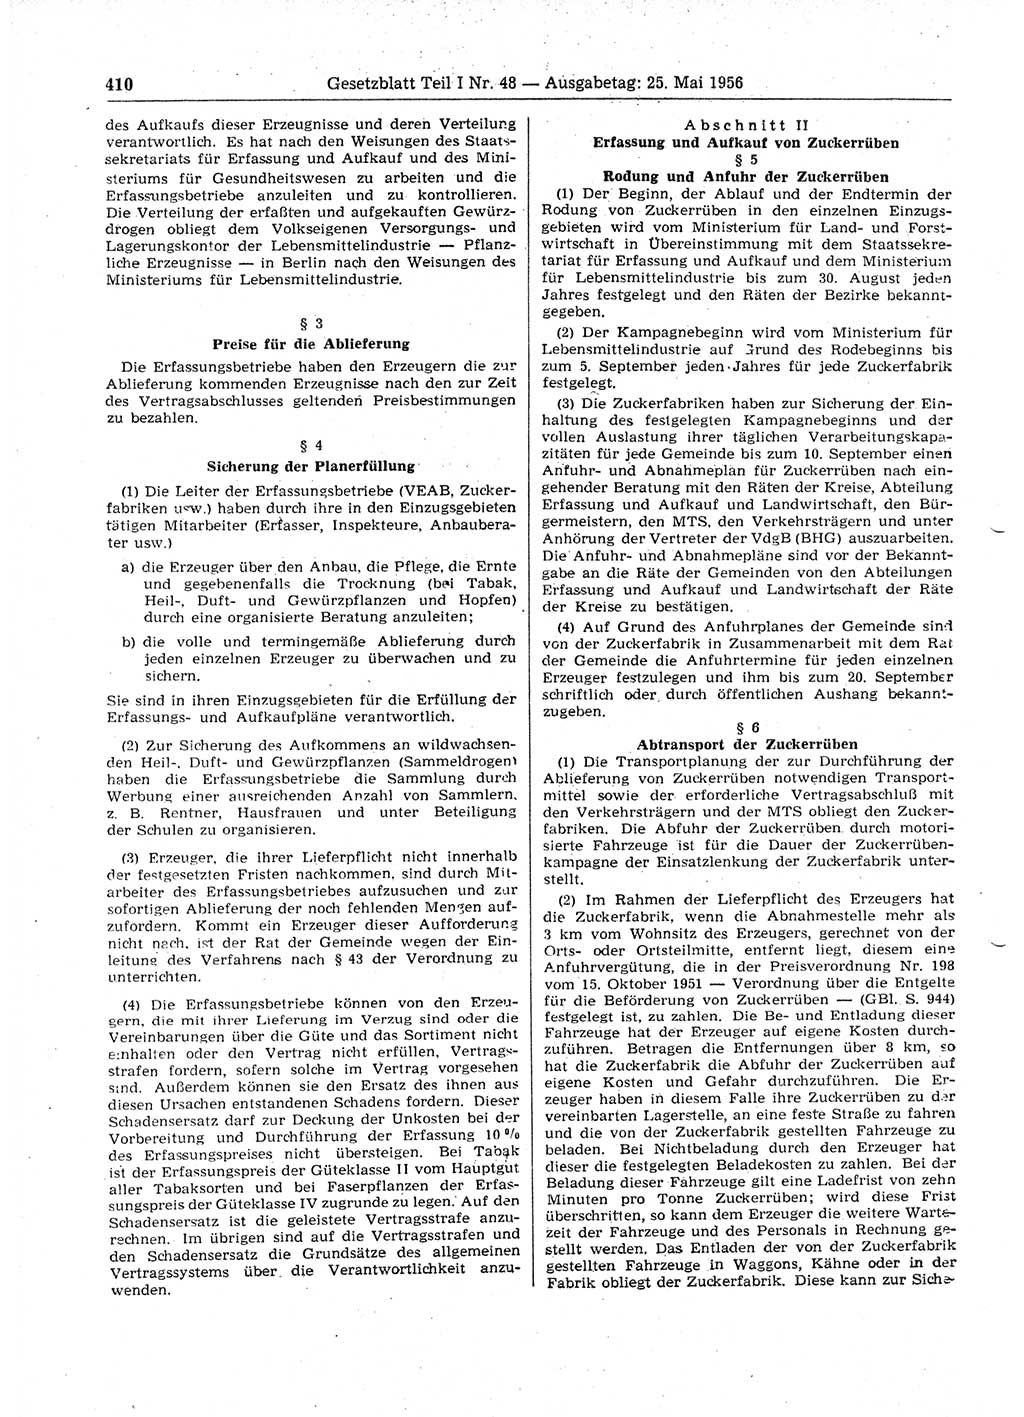 Gesetzblatt (GBl.) der Deutschen Demokratischen Republik (DDR) Teil Ⅰ 1956, Seite 410 (GBl. DDR Ⅰ 1956, S. 410)